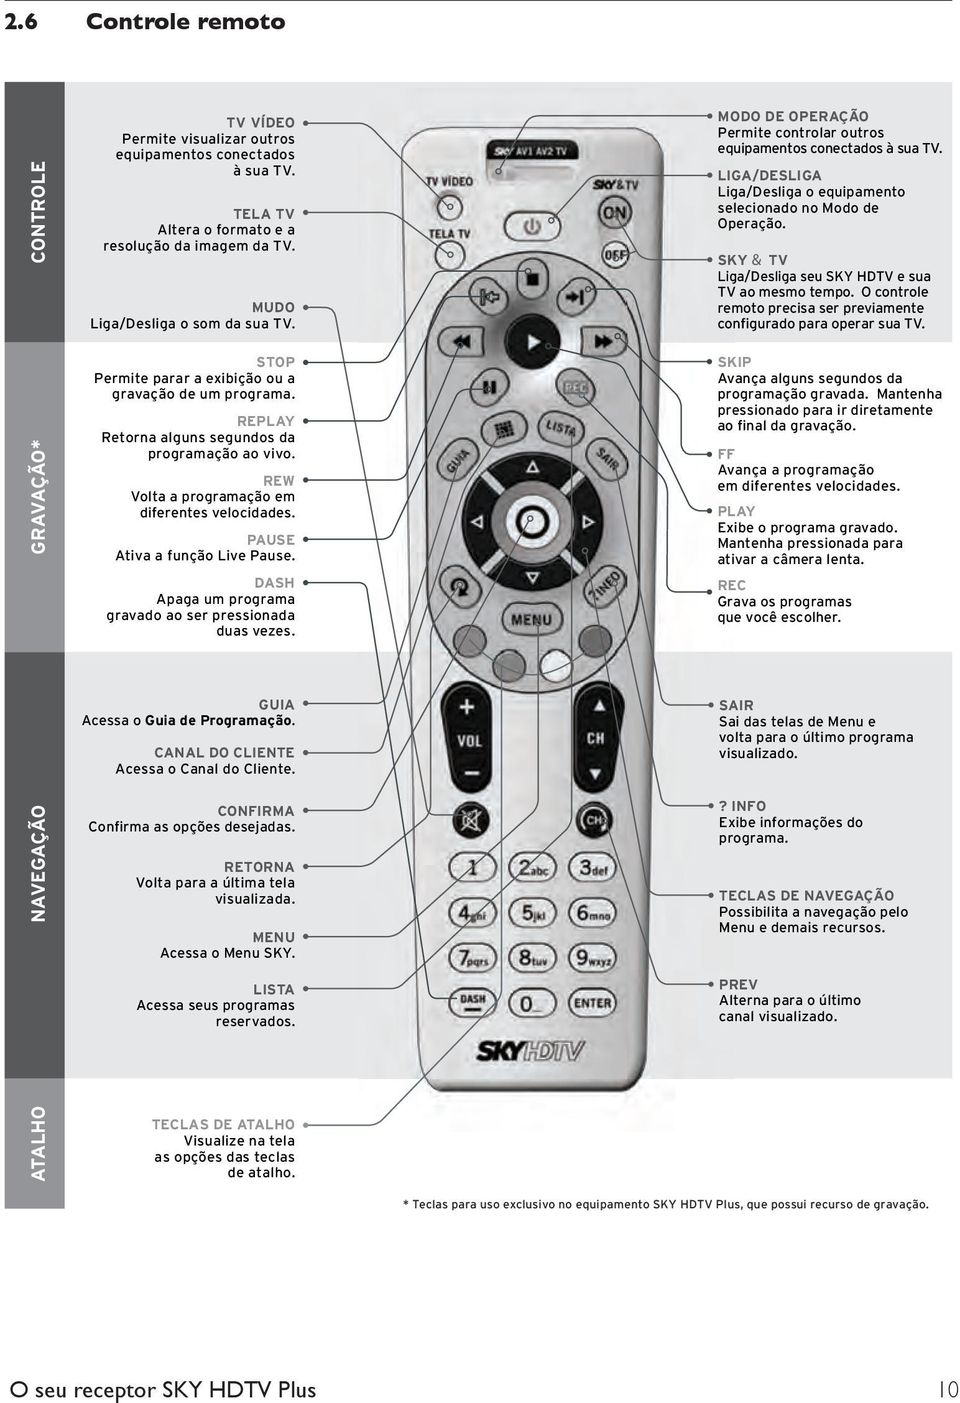 SKY & TV Liga/Desliga seu SKY HDTV e sua TV ao mesmo tempo. O controle remoto precisa ser previamente configurado para operar sua TV.